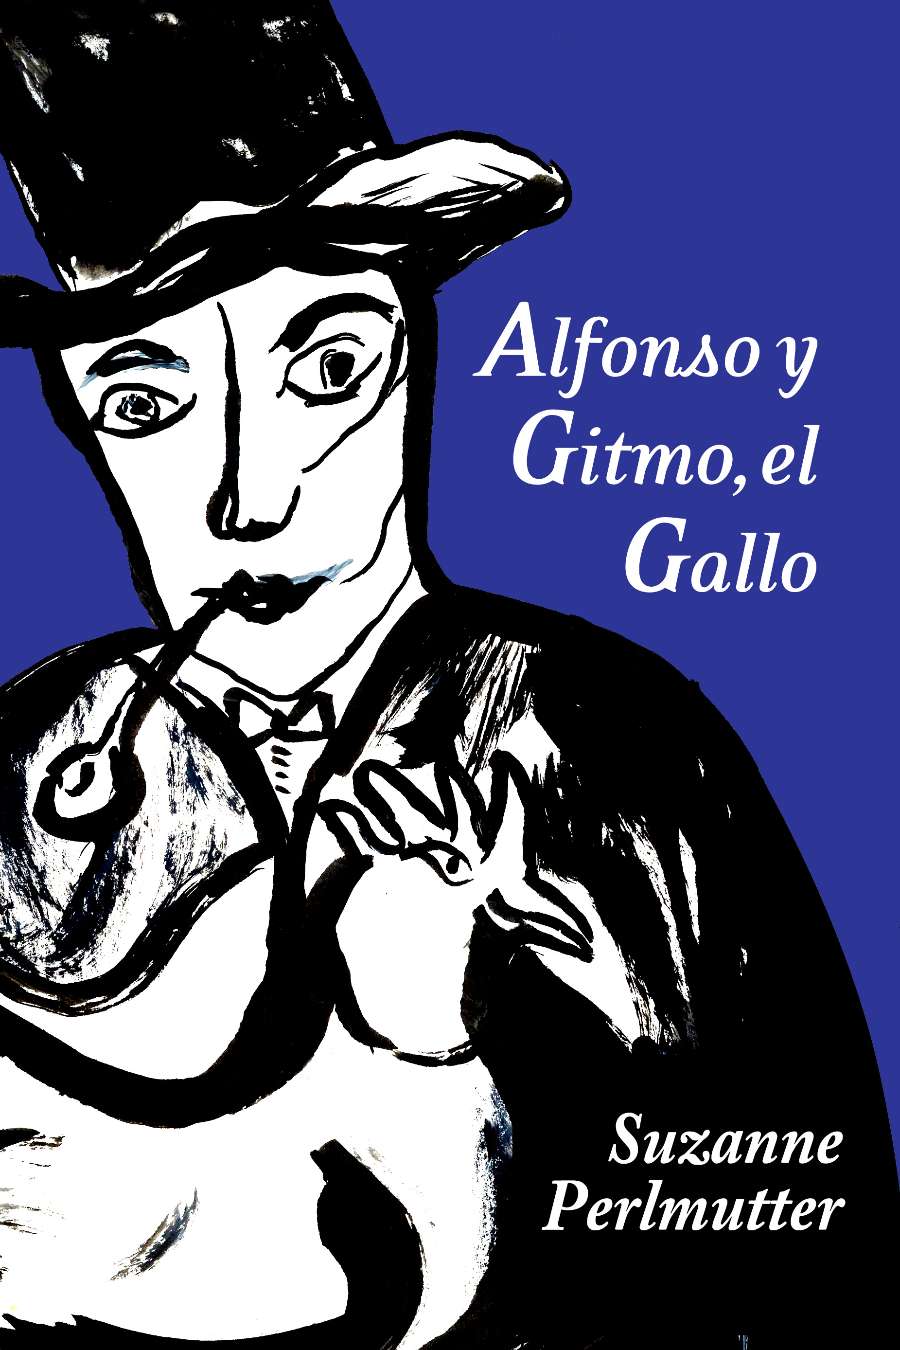 Alfonzo y Gitmo, el Gallo Image